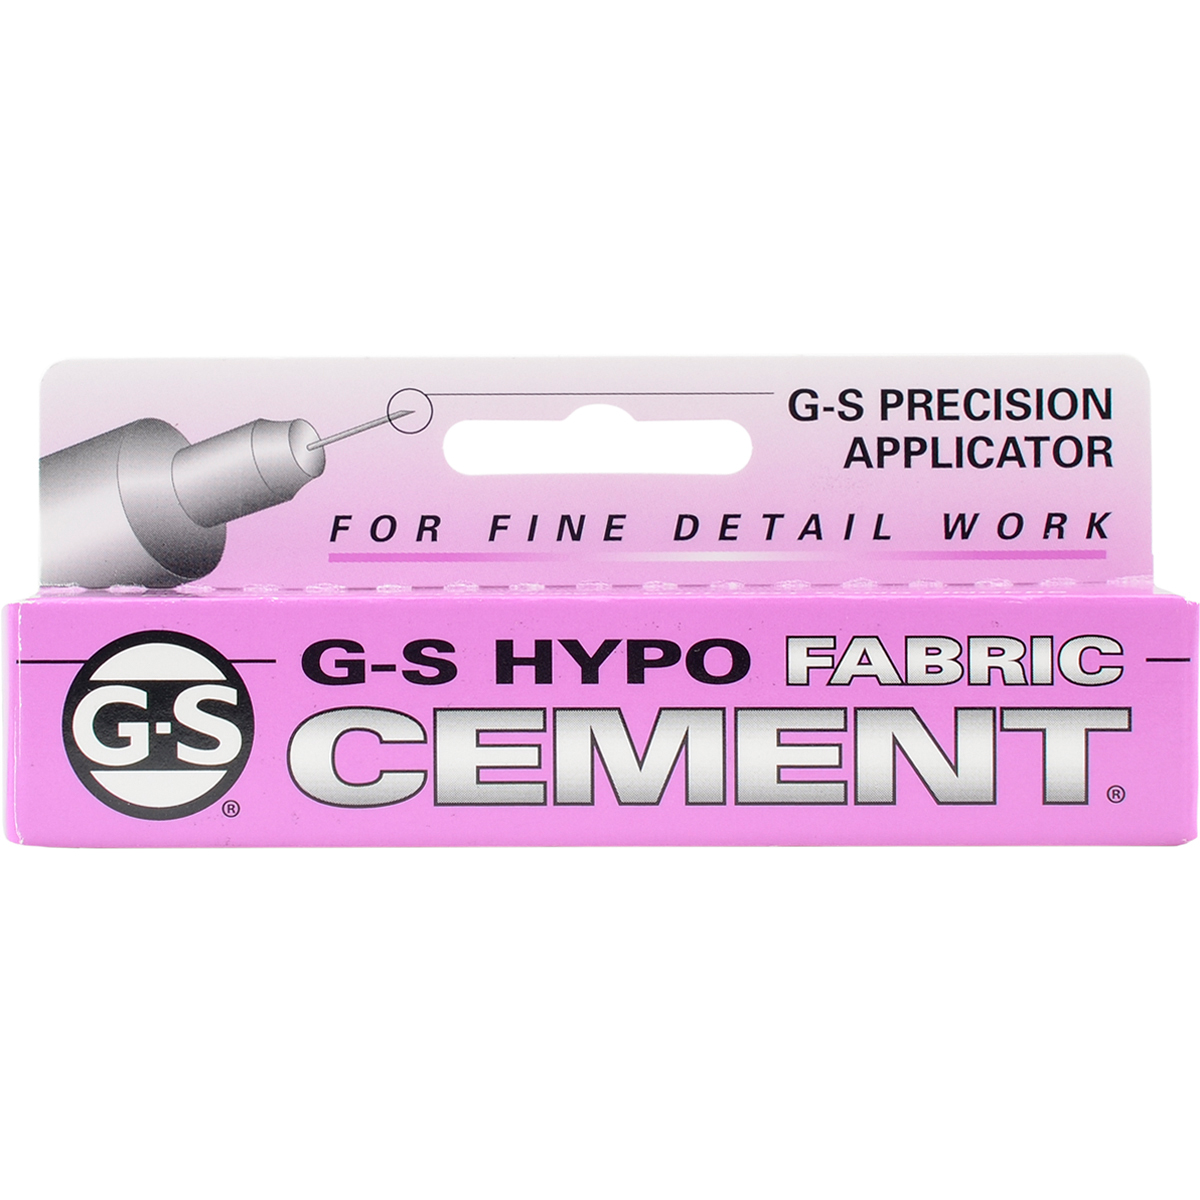 Jagsfab 33 Oz G-s Hypo Fabric Cement